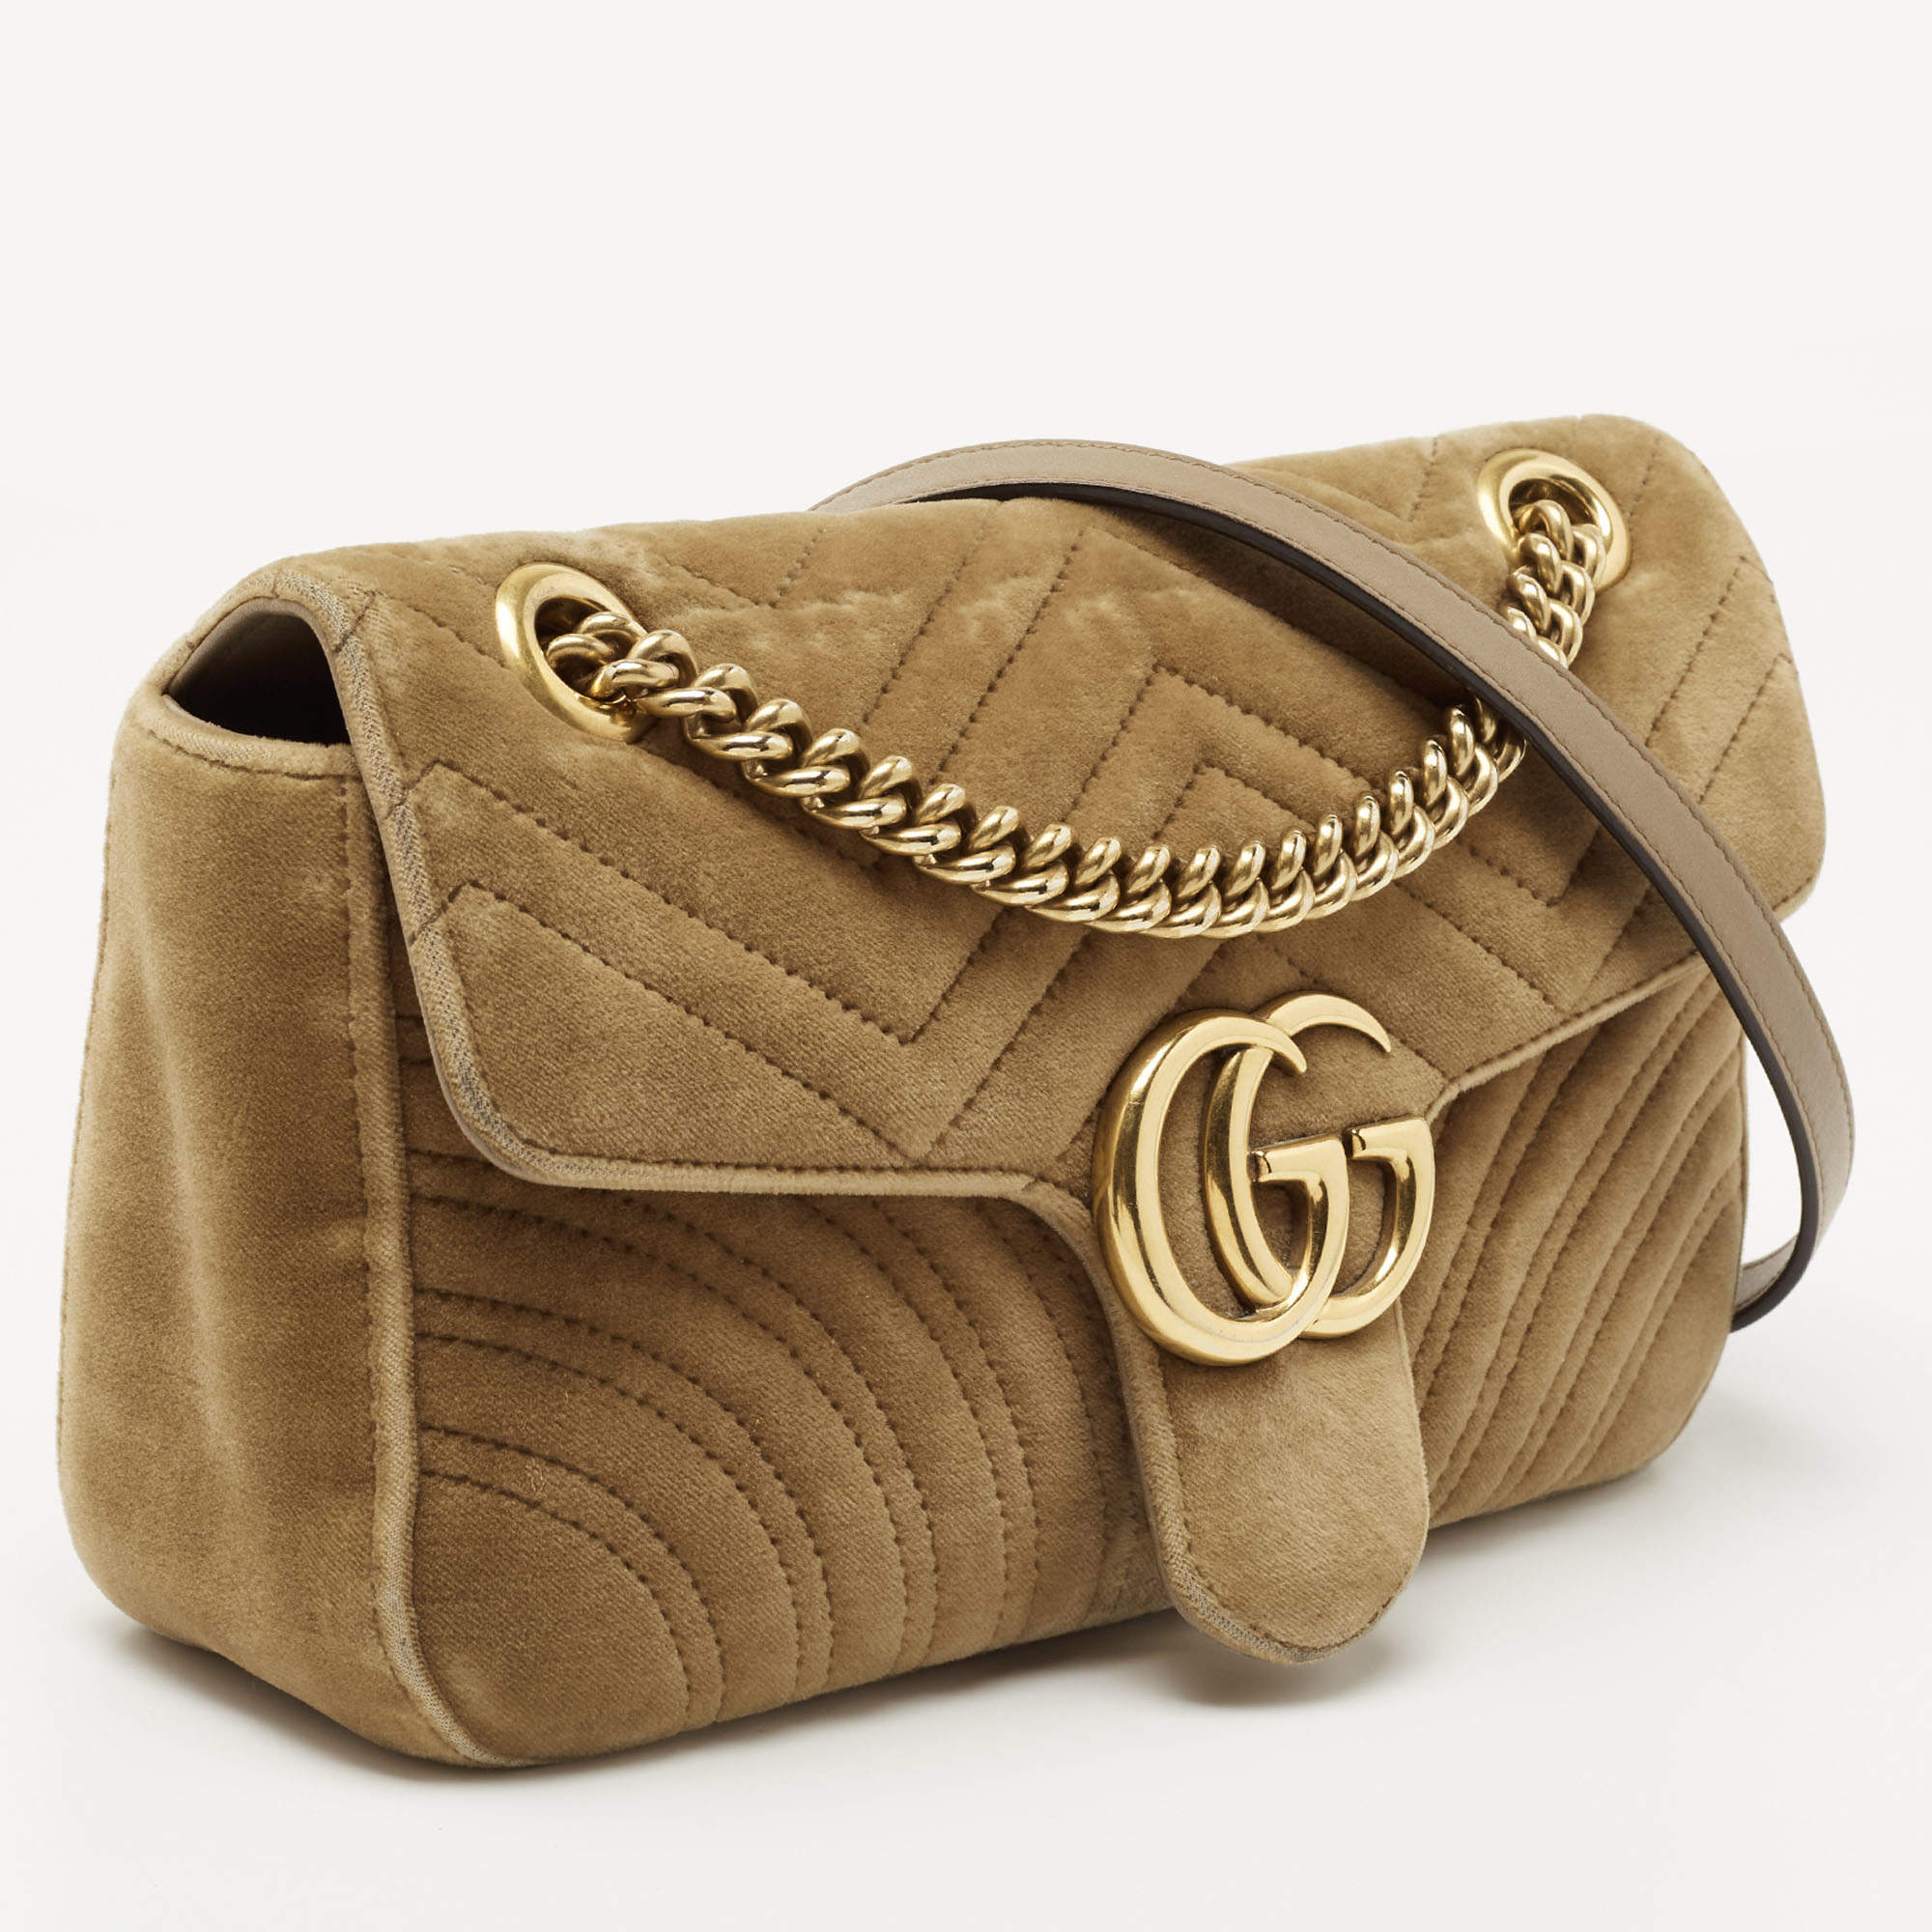 Asos Stripe Dress & Gucci Marmont Velvet Bag